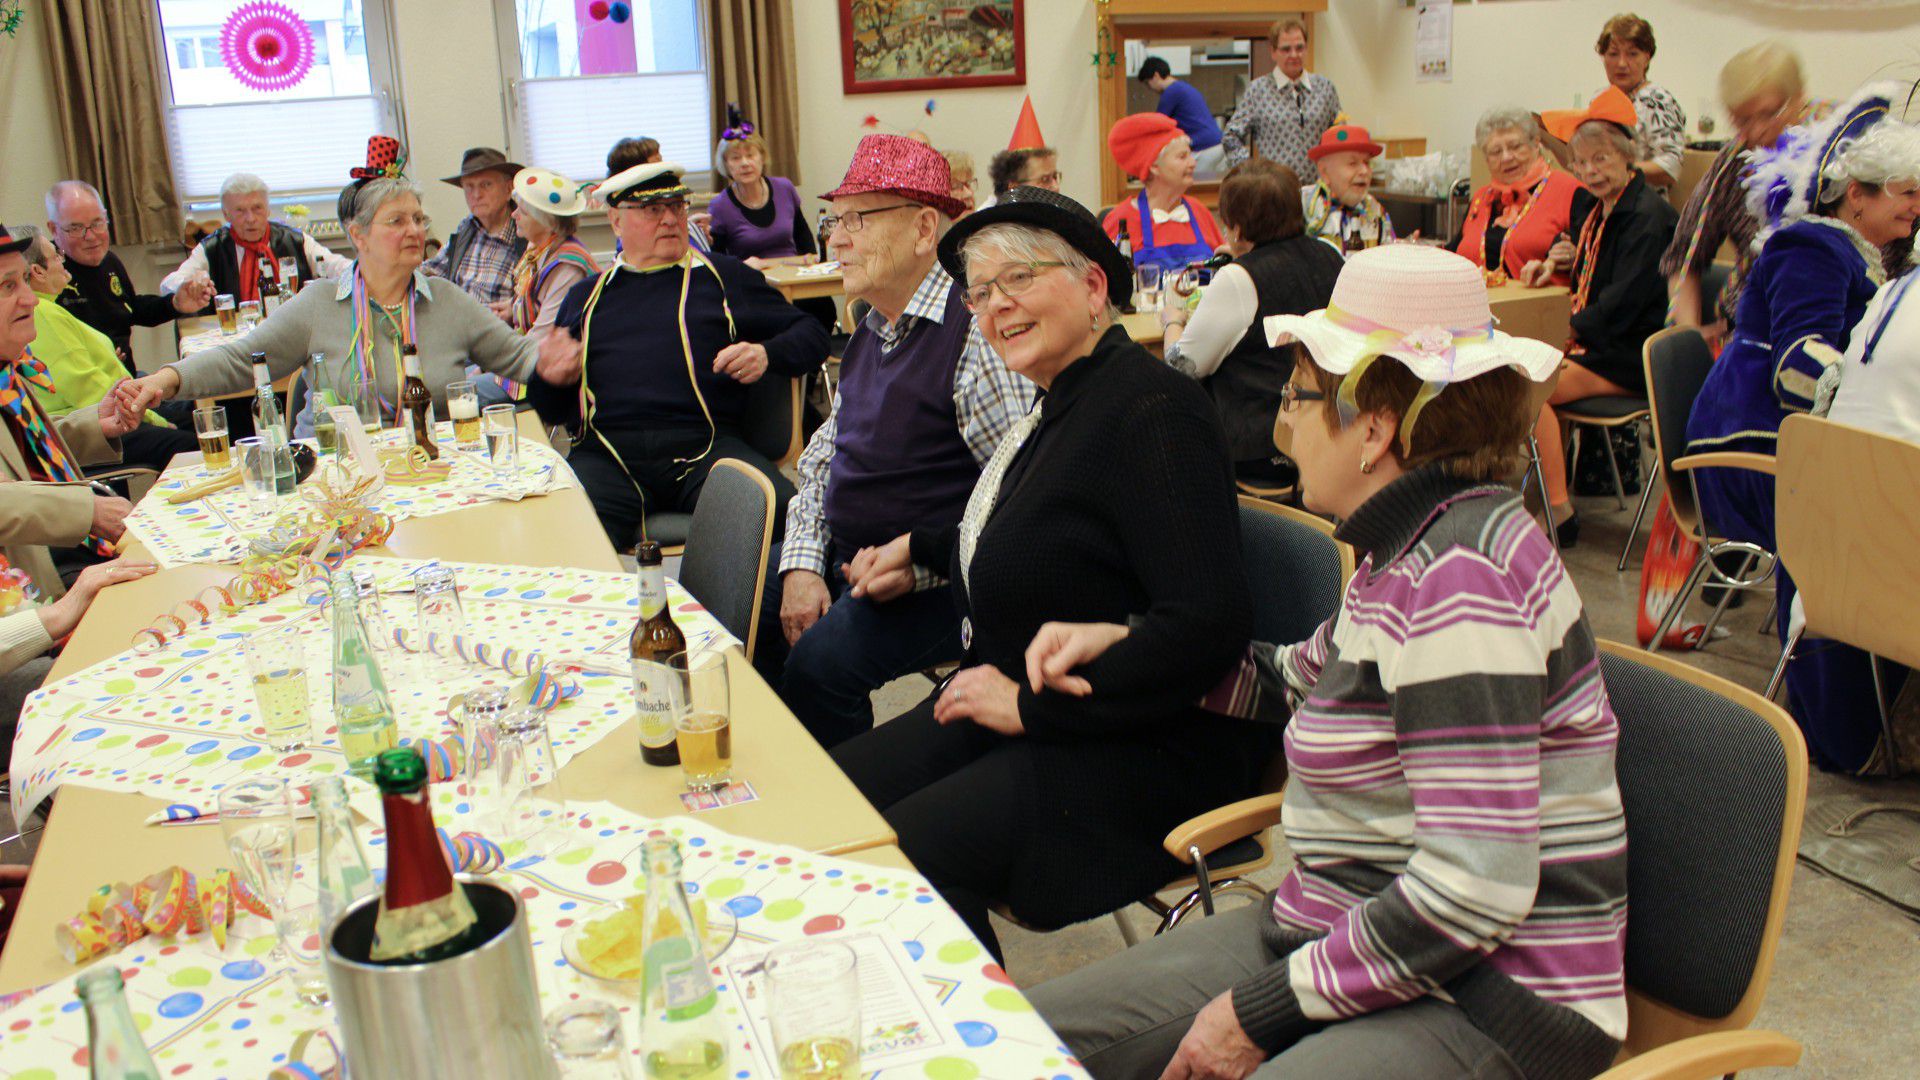 Bester Stimmung waren die fast 60 Mitglieder und Gäste bei der Karnevalfeier des Trägervereins am Samstag in der Seniorenbegegnungsstätte. (Foto: privat)